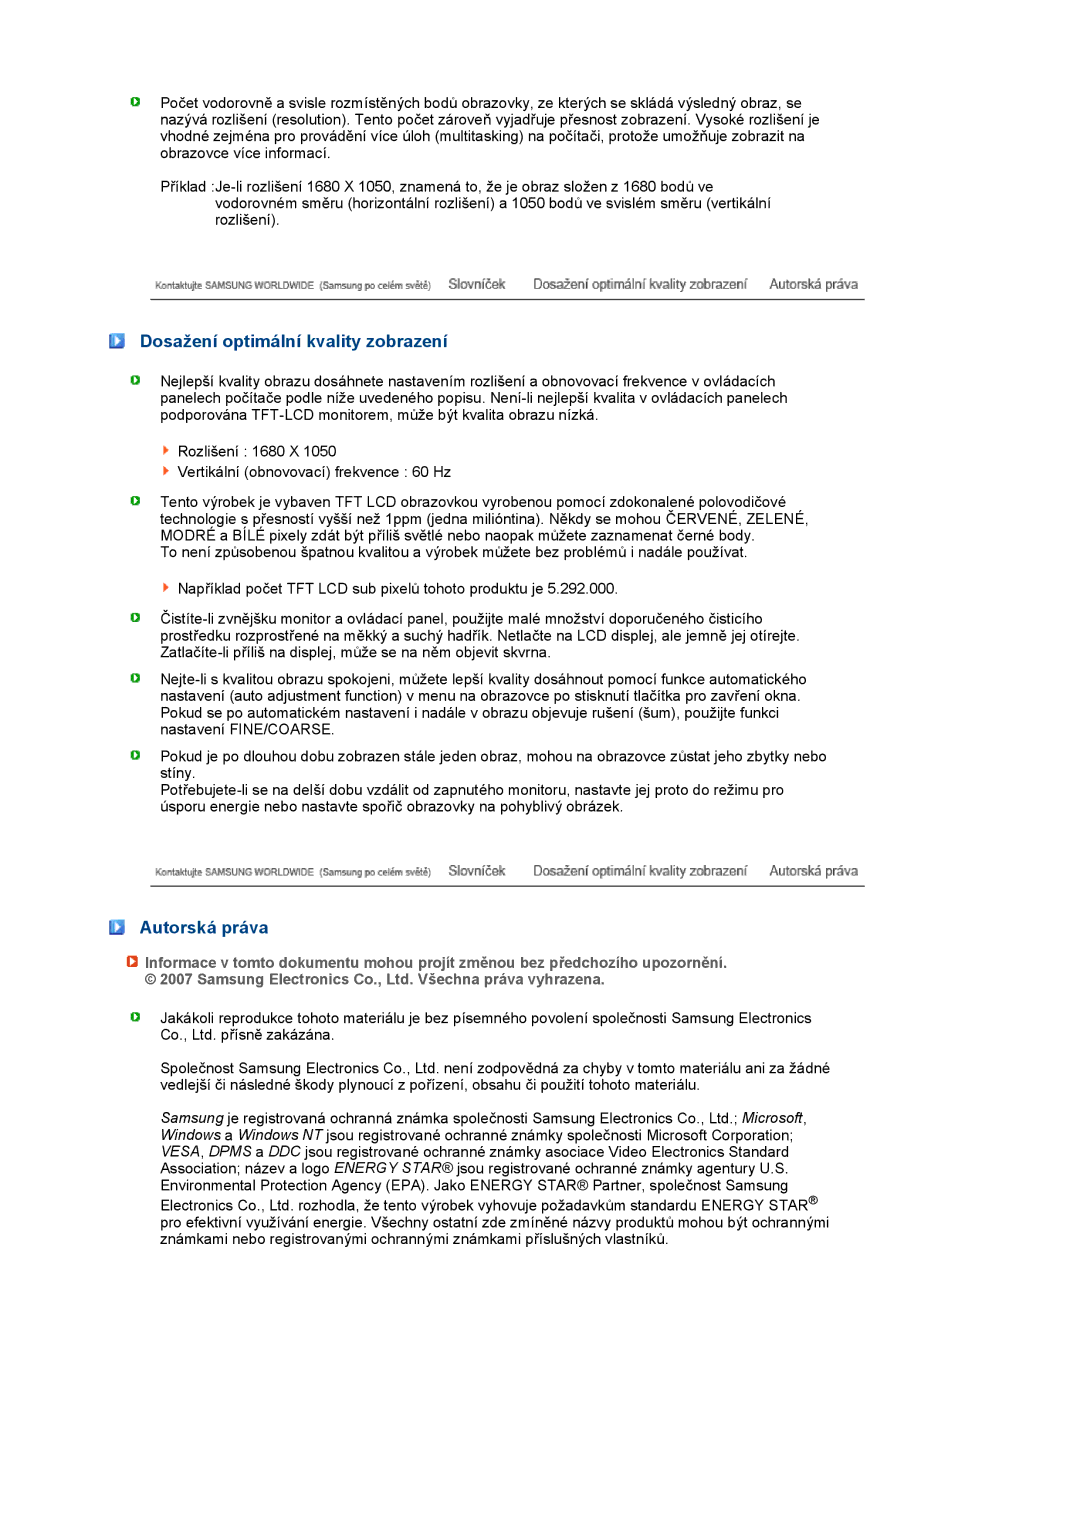 Samsung LS22PEBSFV/EDC, LS20PEBSFV/EDC manual Dosažení optimální kvality zobrazení, Autorská práva 